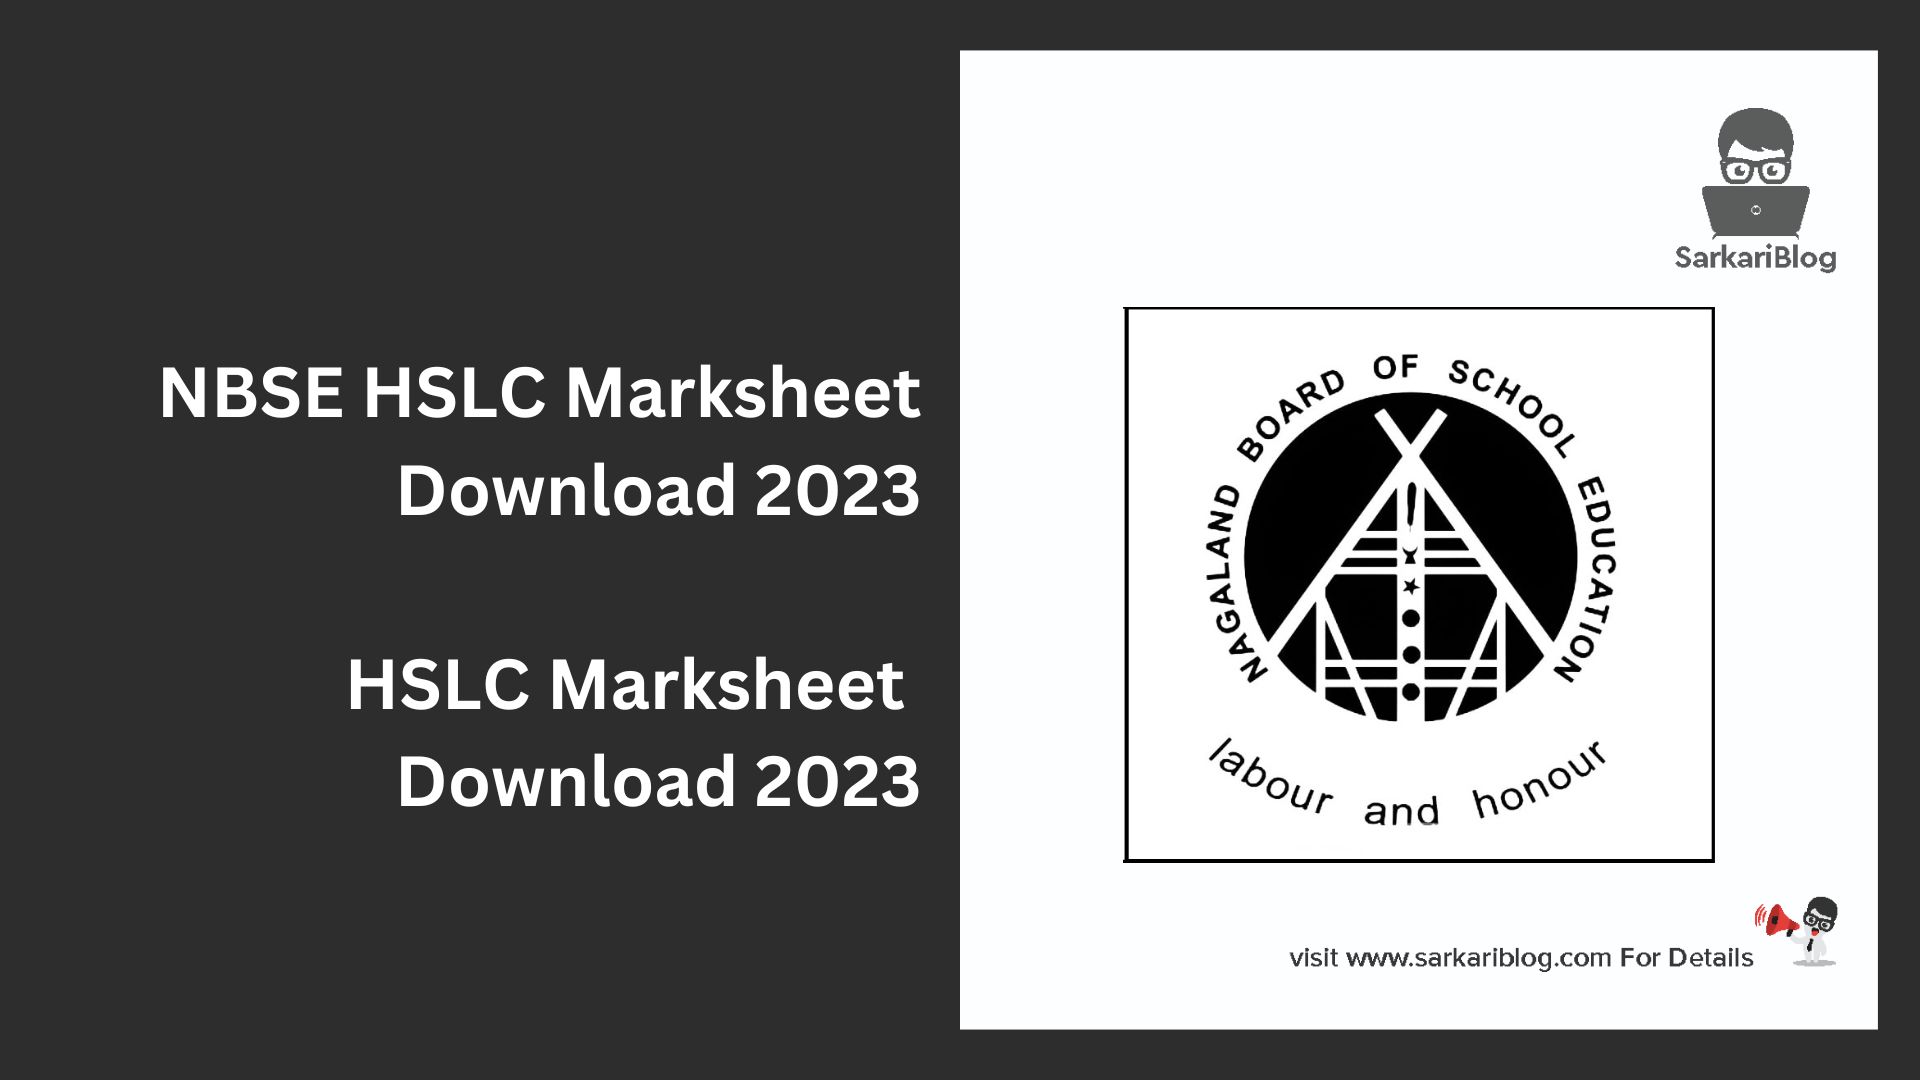 NBSE HSLC Marksheet Download 2023